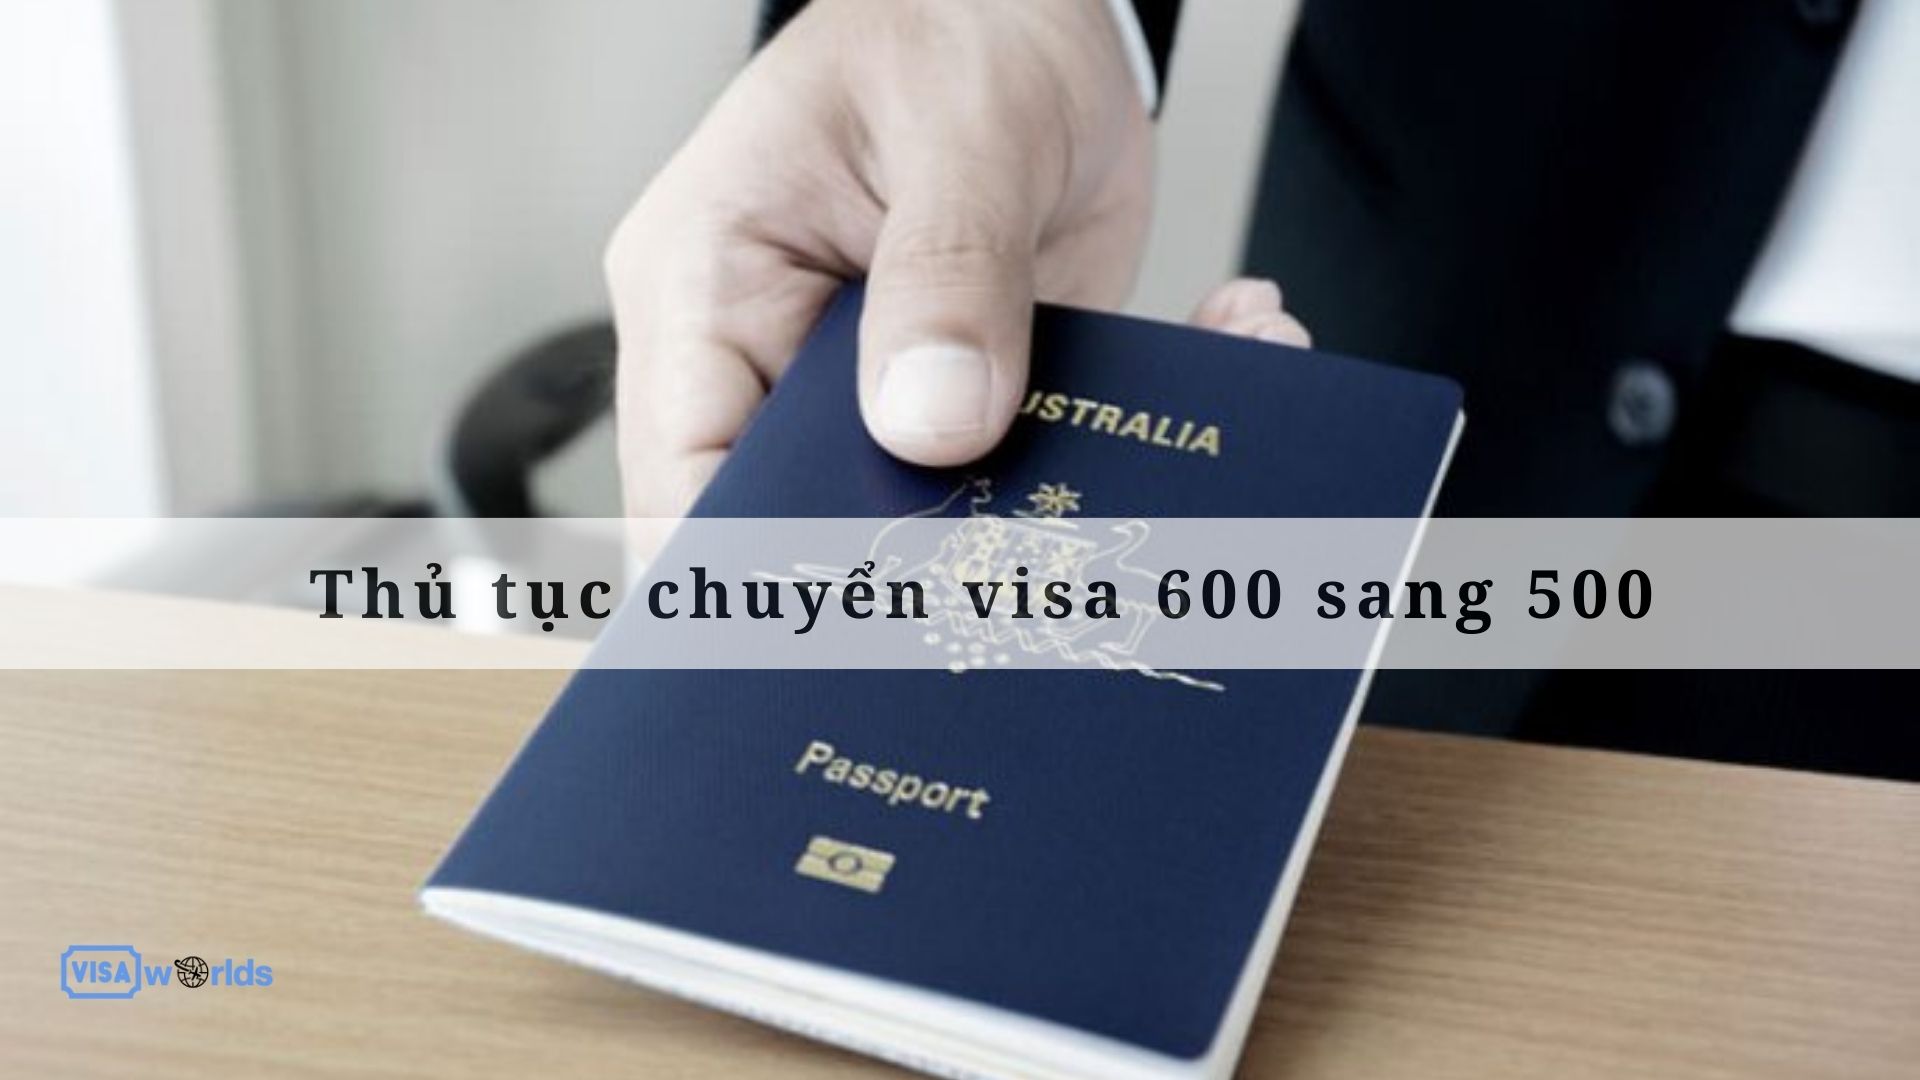 Thủ tục chuyển visa 600 sang 500